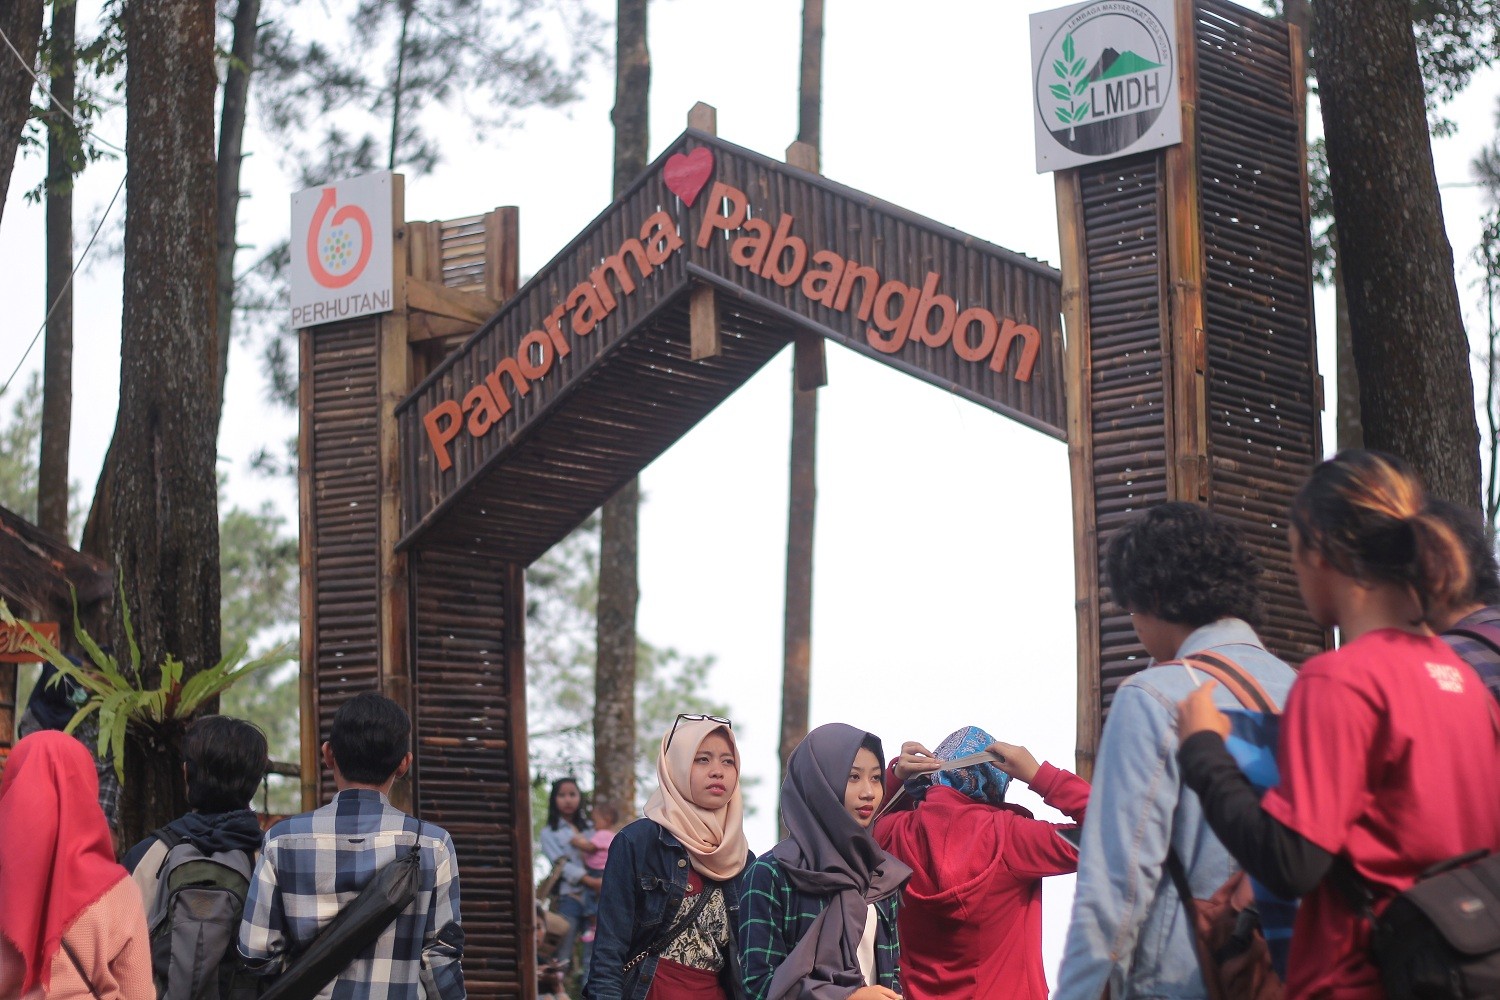 5 Lokasi wisata terbaru yang hits di Bogor, instagramable